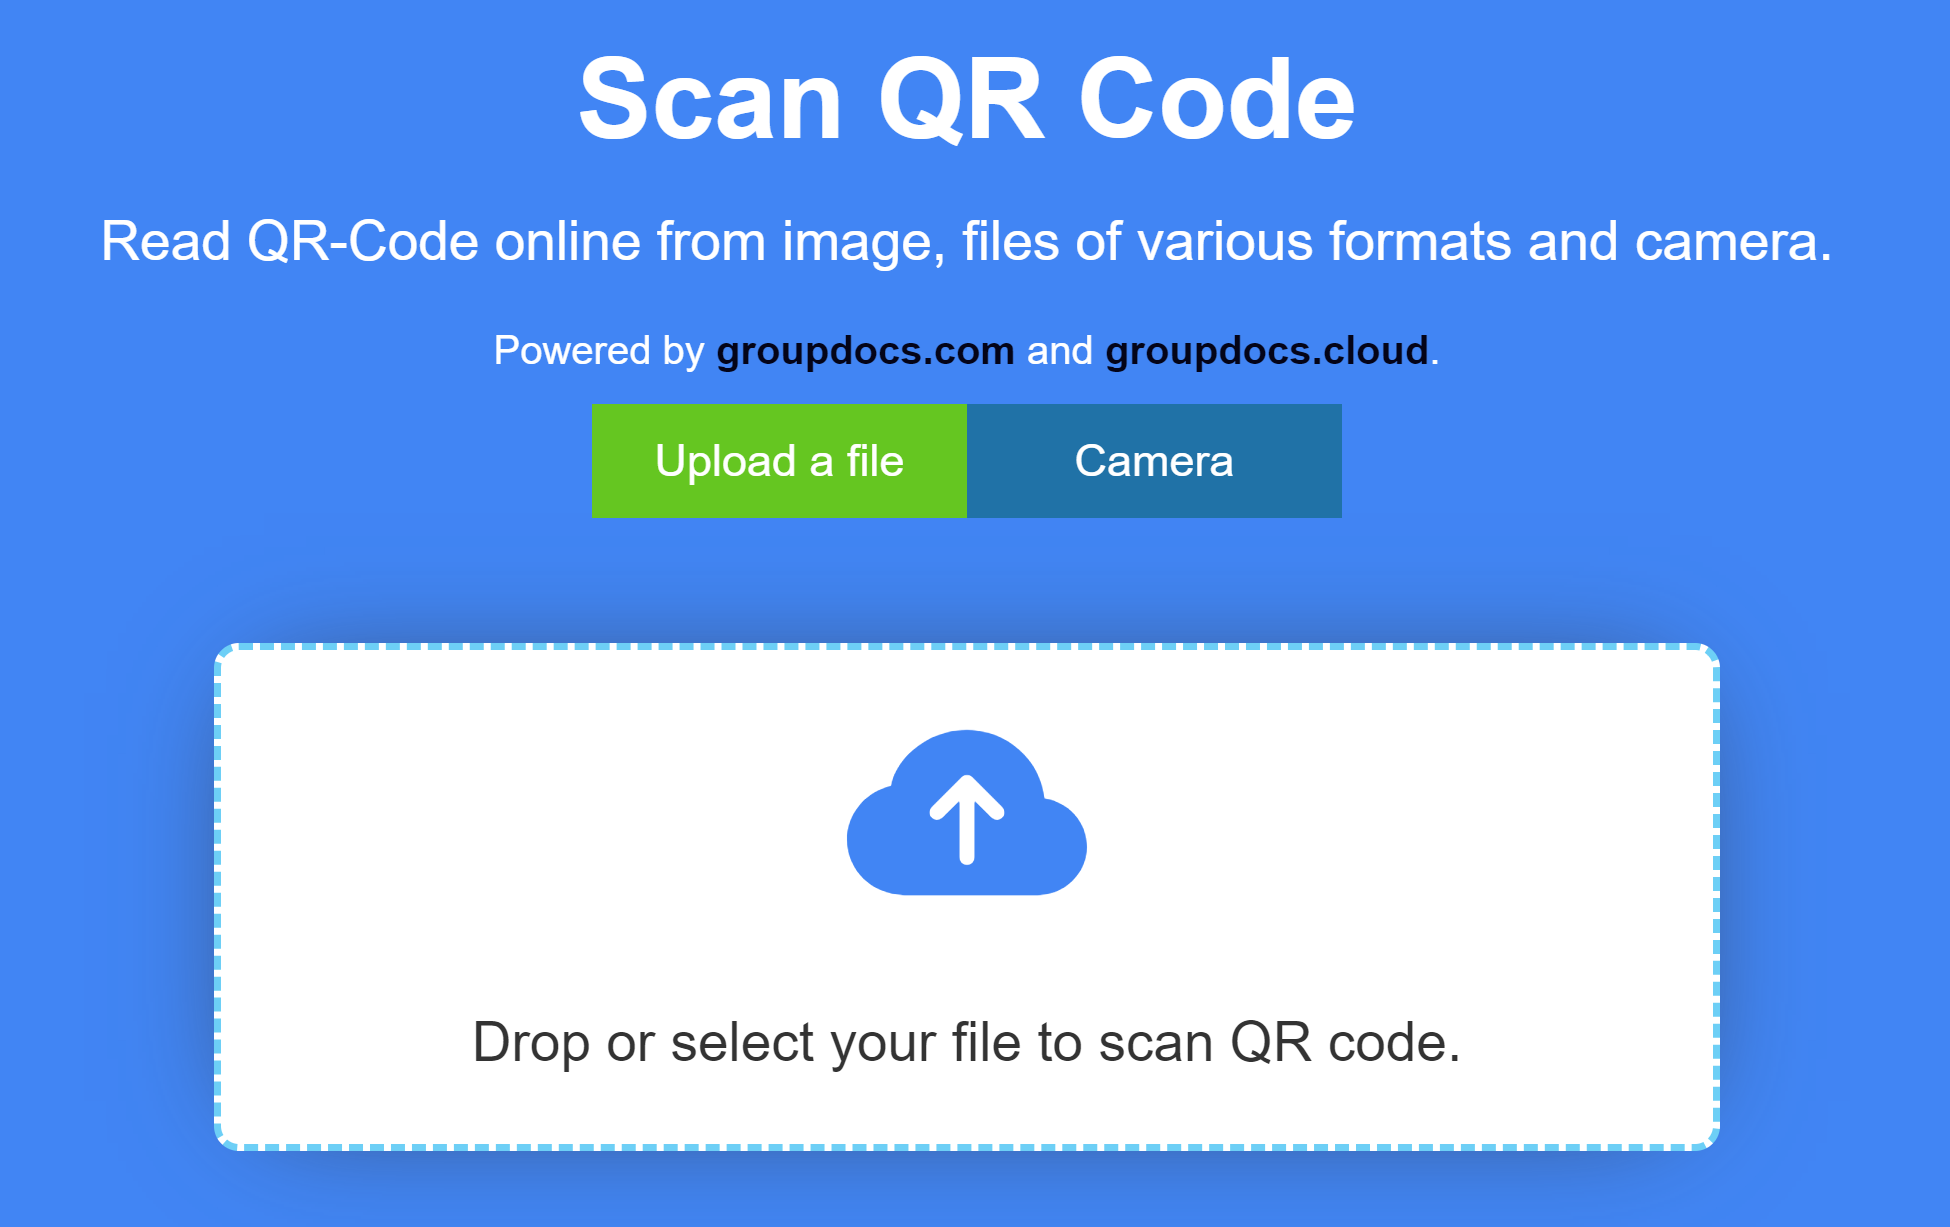 sitio web del escáner de código qr